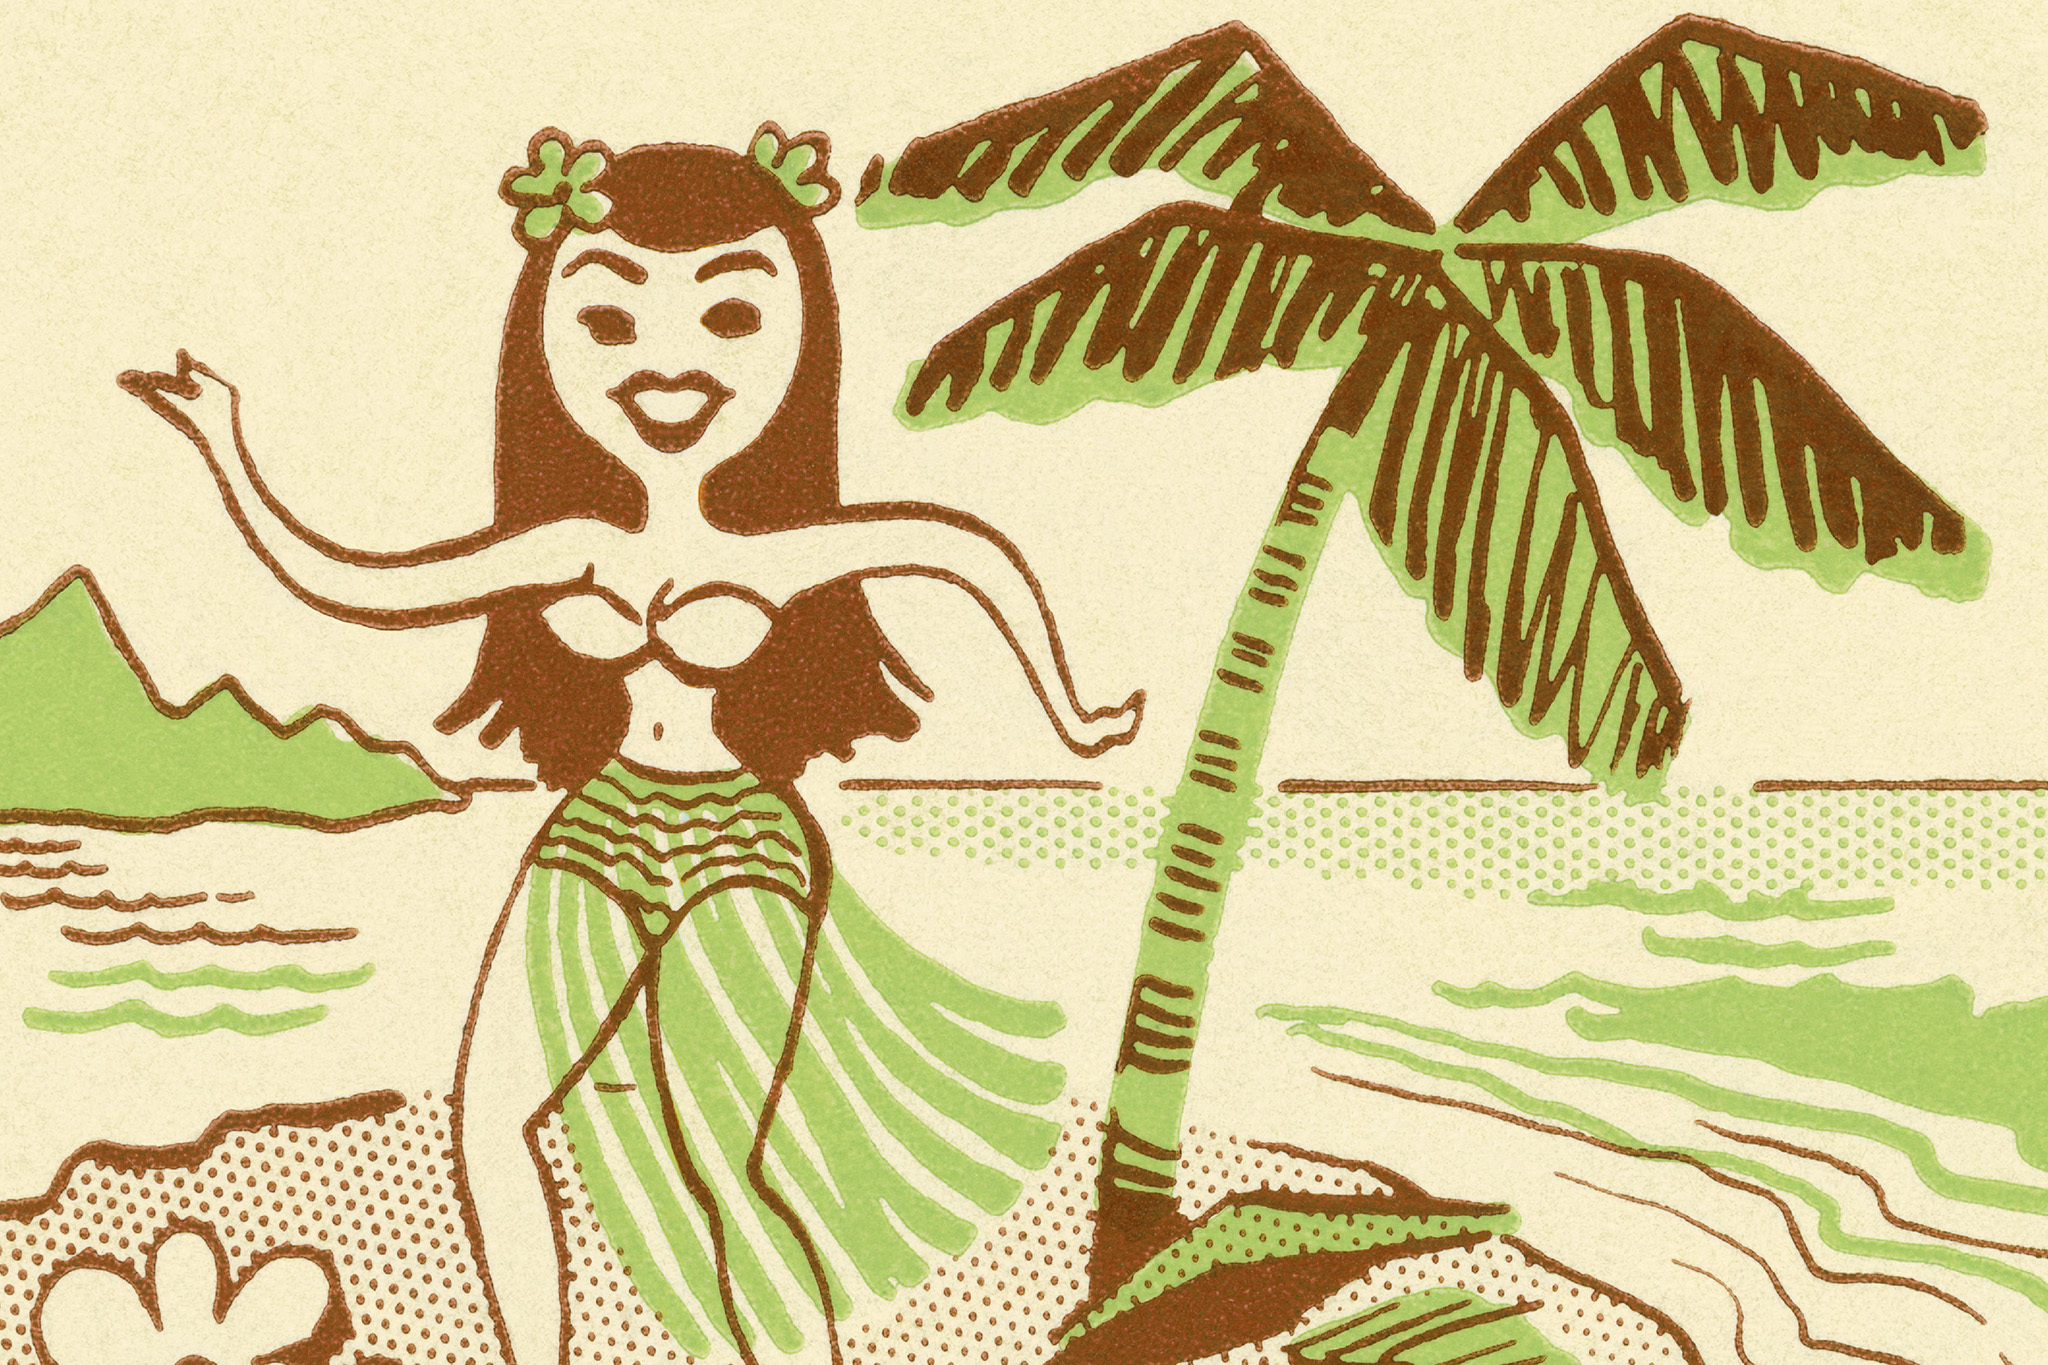 Did Hawaiians actually wear coconut bras? - Quora